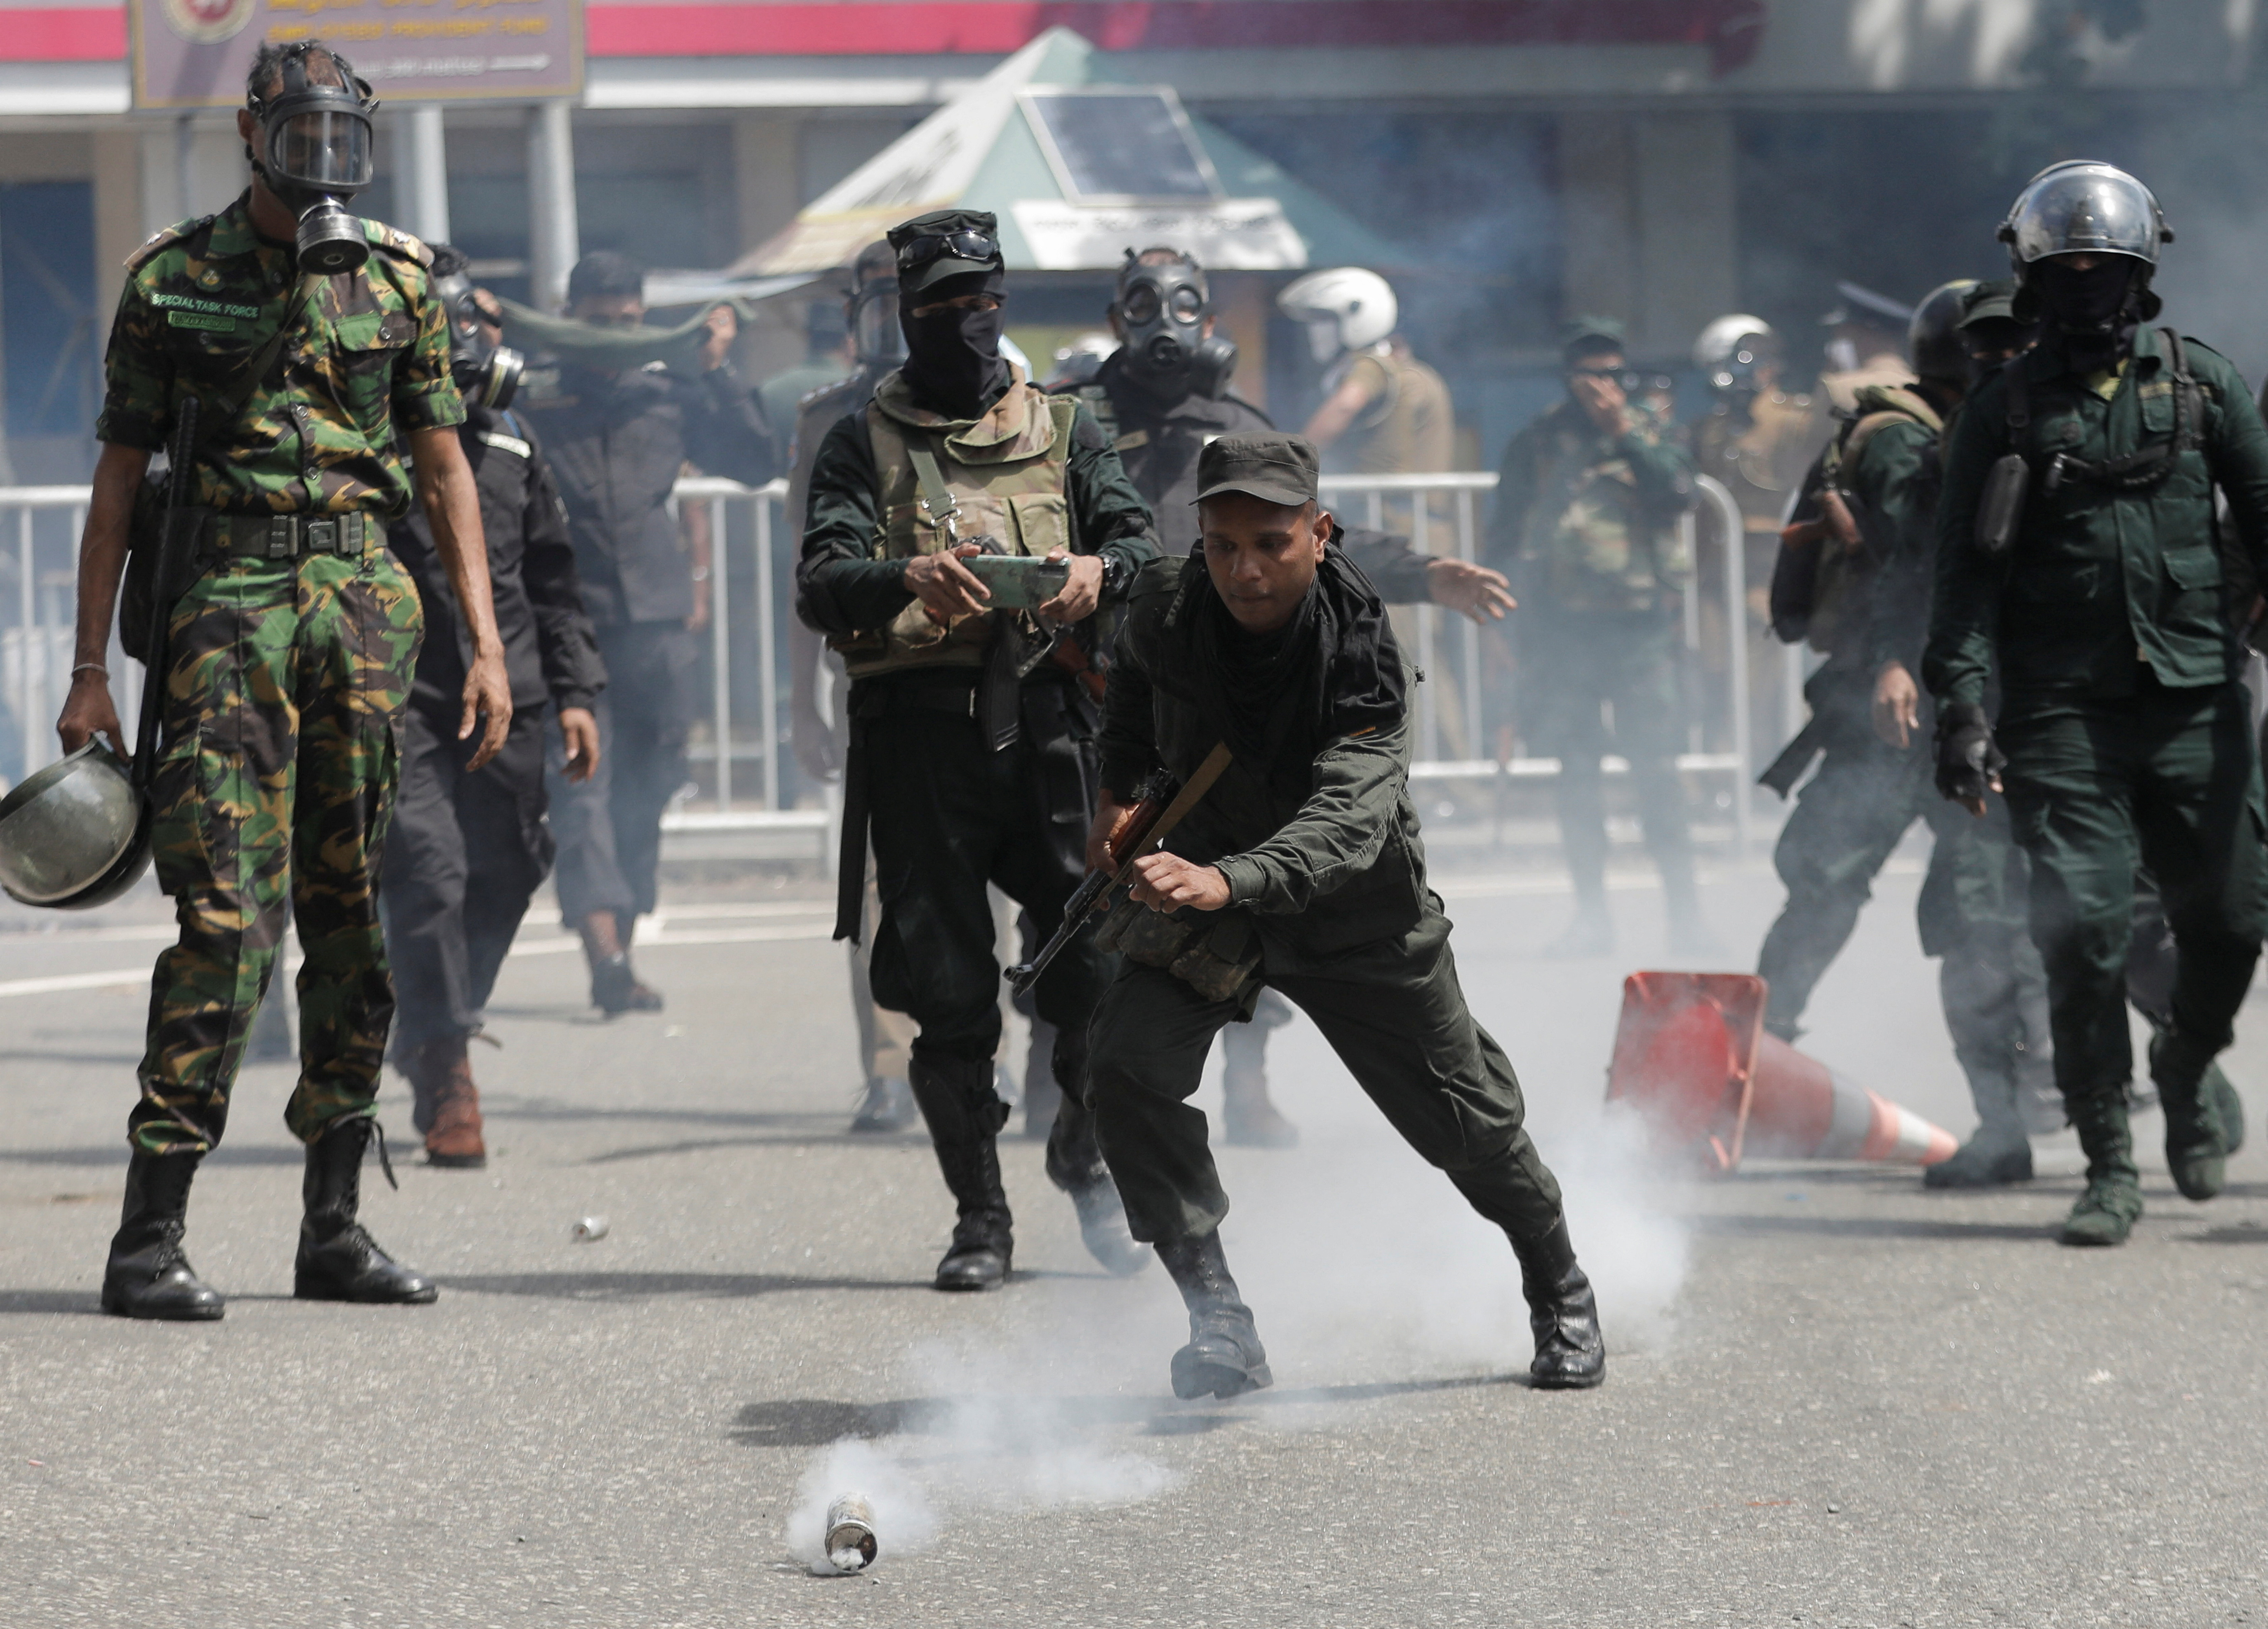 La policía utiliza gas lacrimógeno para dispersar a los manifestantes durante una protesta que exige la dimisión del presidente Gotabaya Rajapaksa, en medio de la crisis económica del país, cerca de la residencia del presidente en Colombo, Sri Lanka, 9 de julio de 2022. REUTERS/Dinuka Liyanawatte